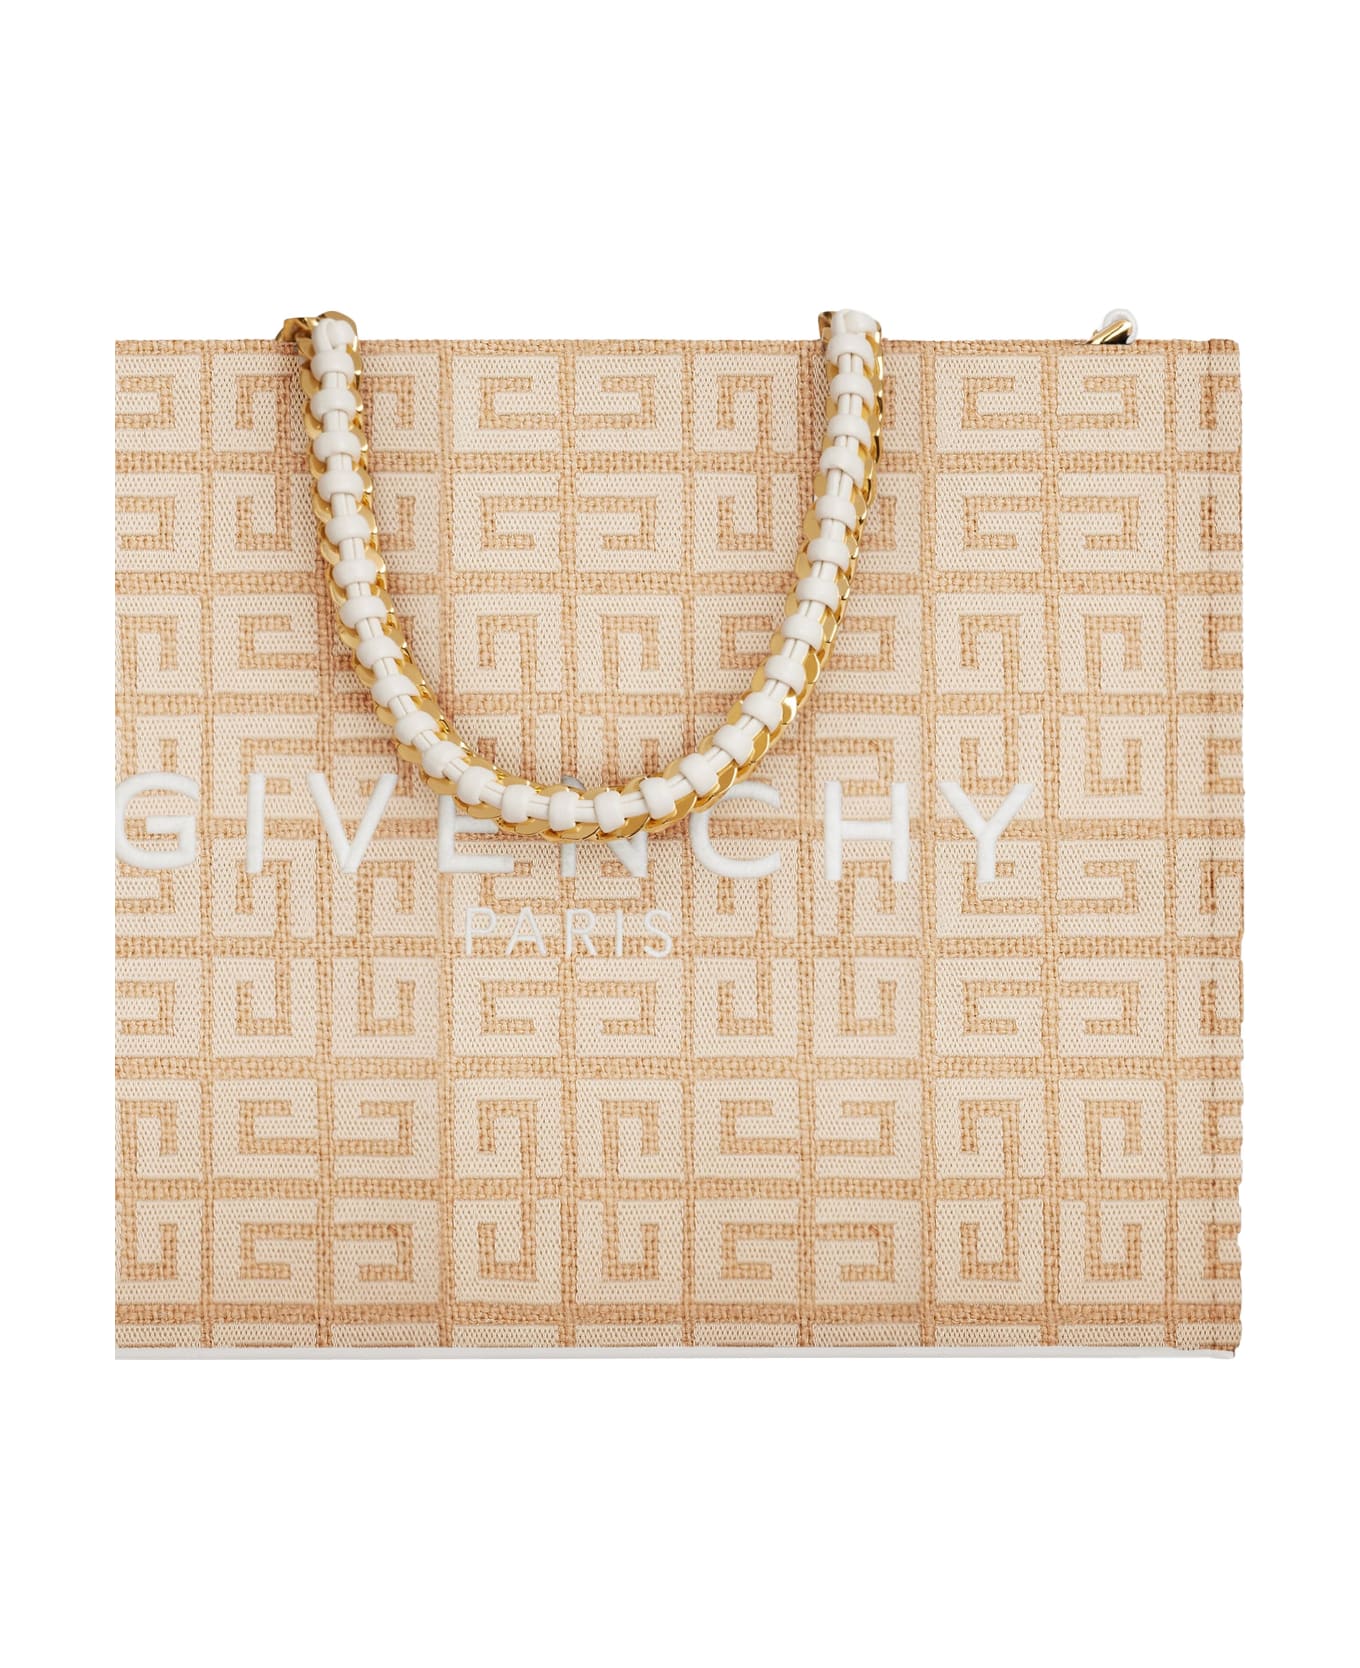 Givenchy G-tote Handbag - Brown トートバッグ